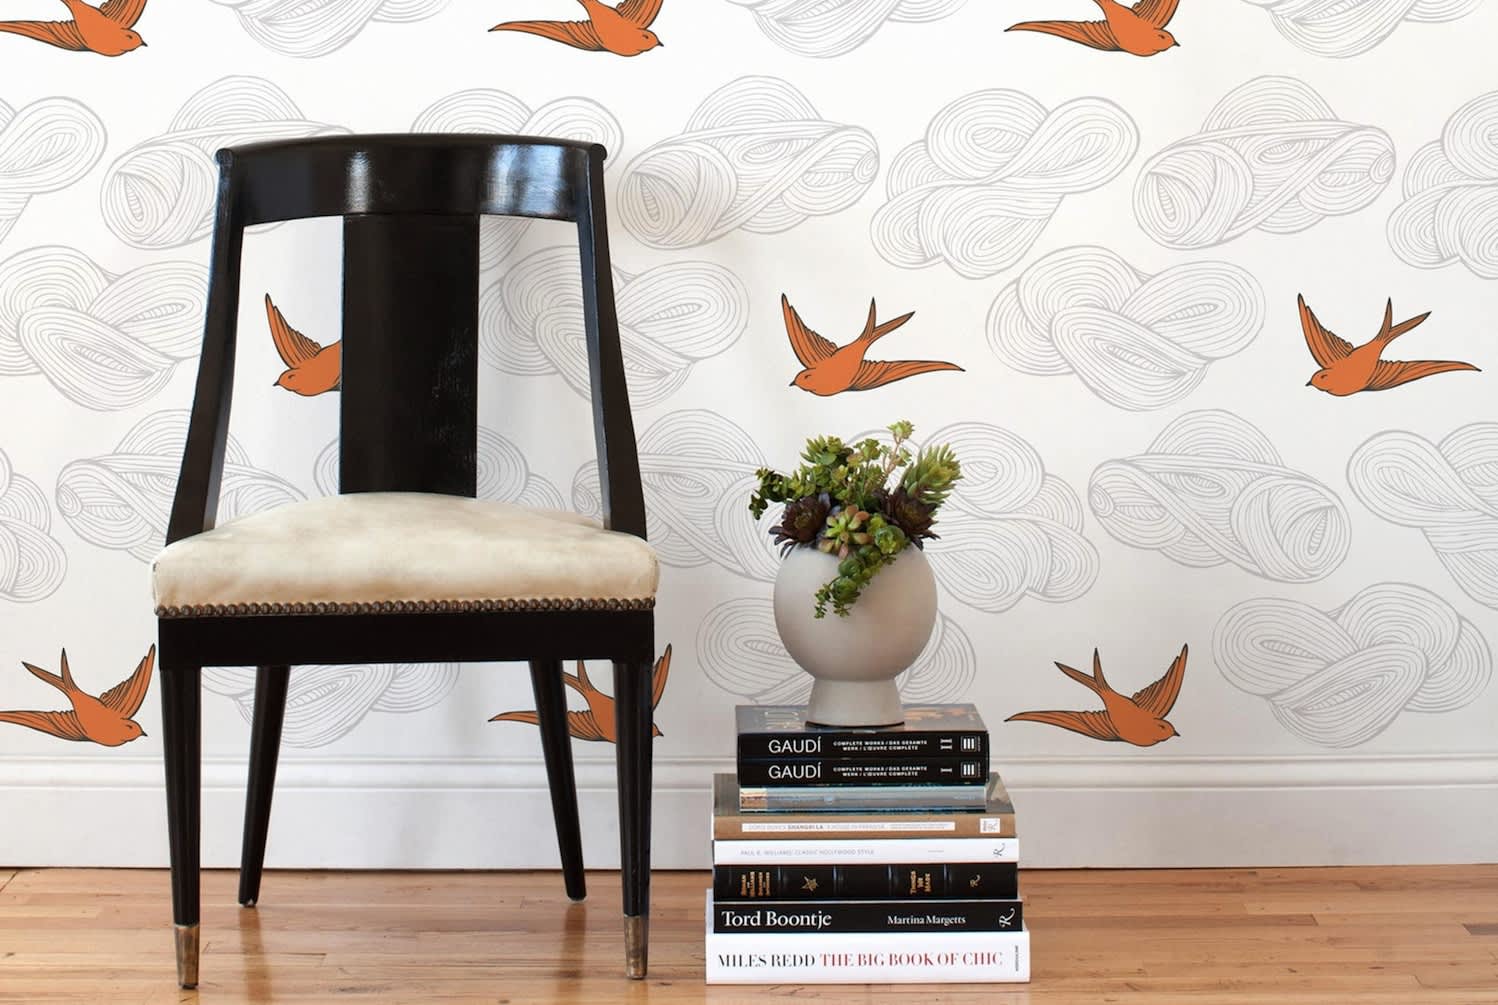 Orange Block Fabric, Wallpaper and Home Decor